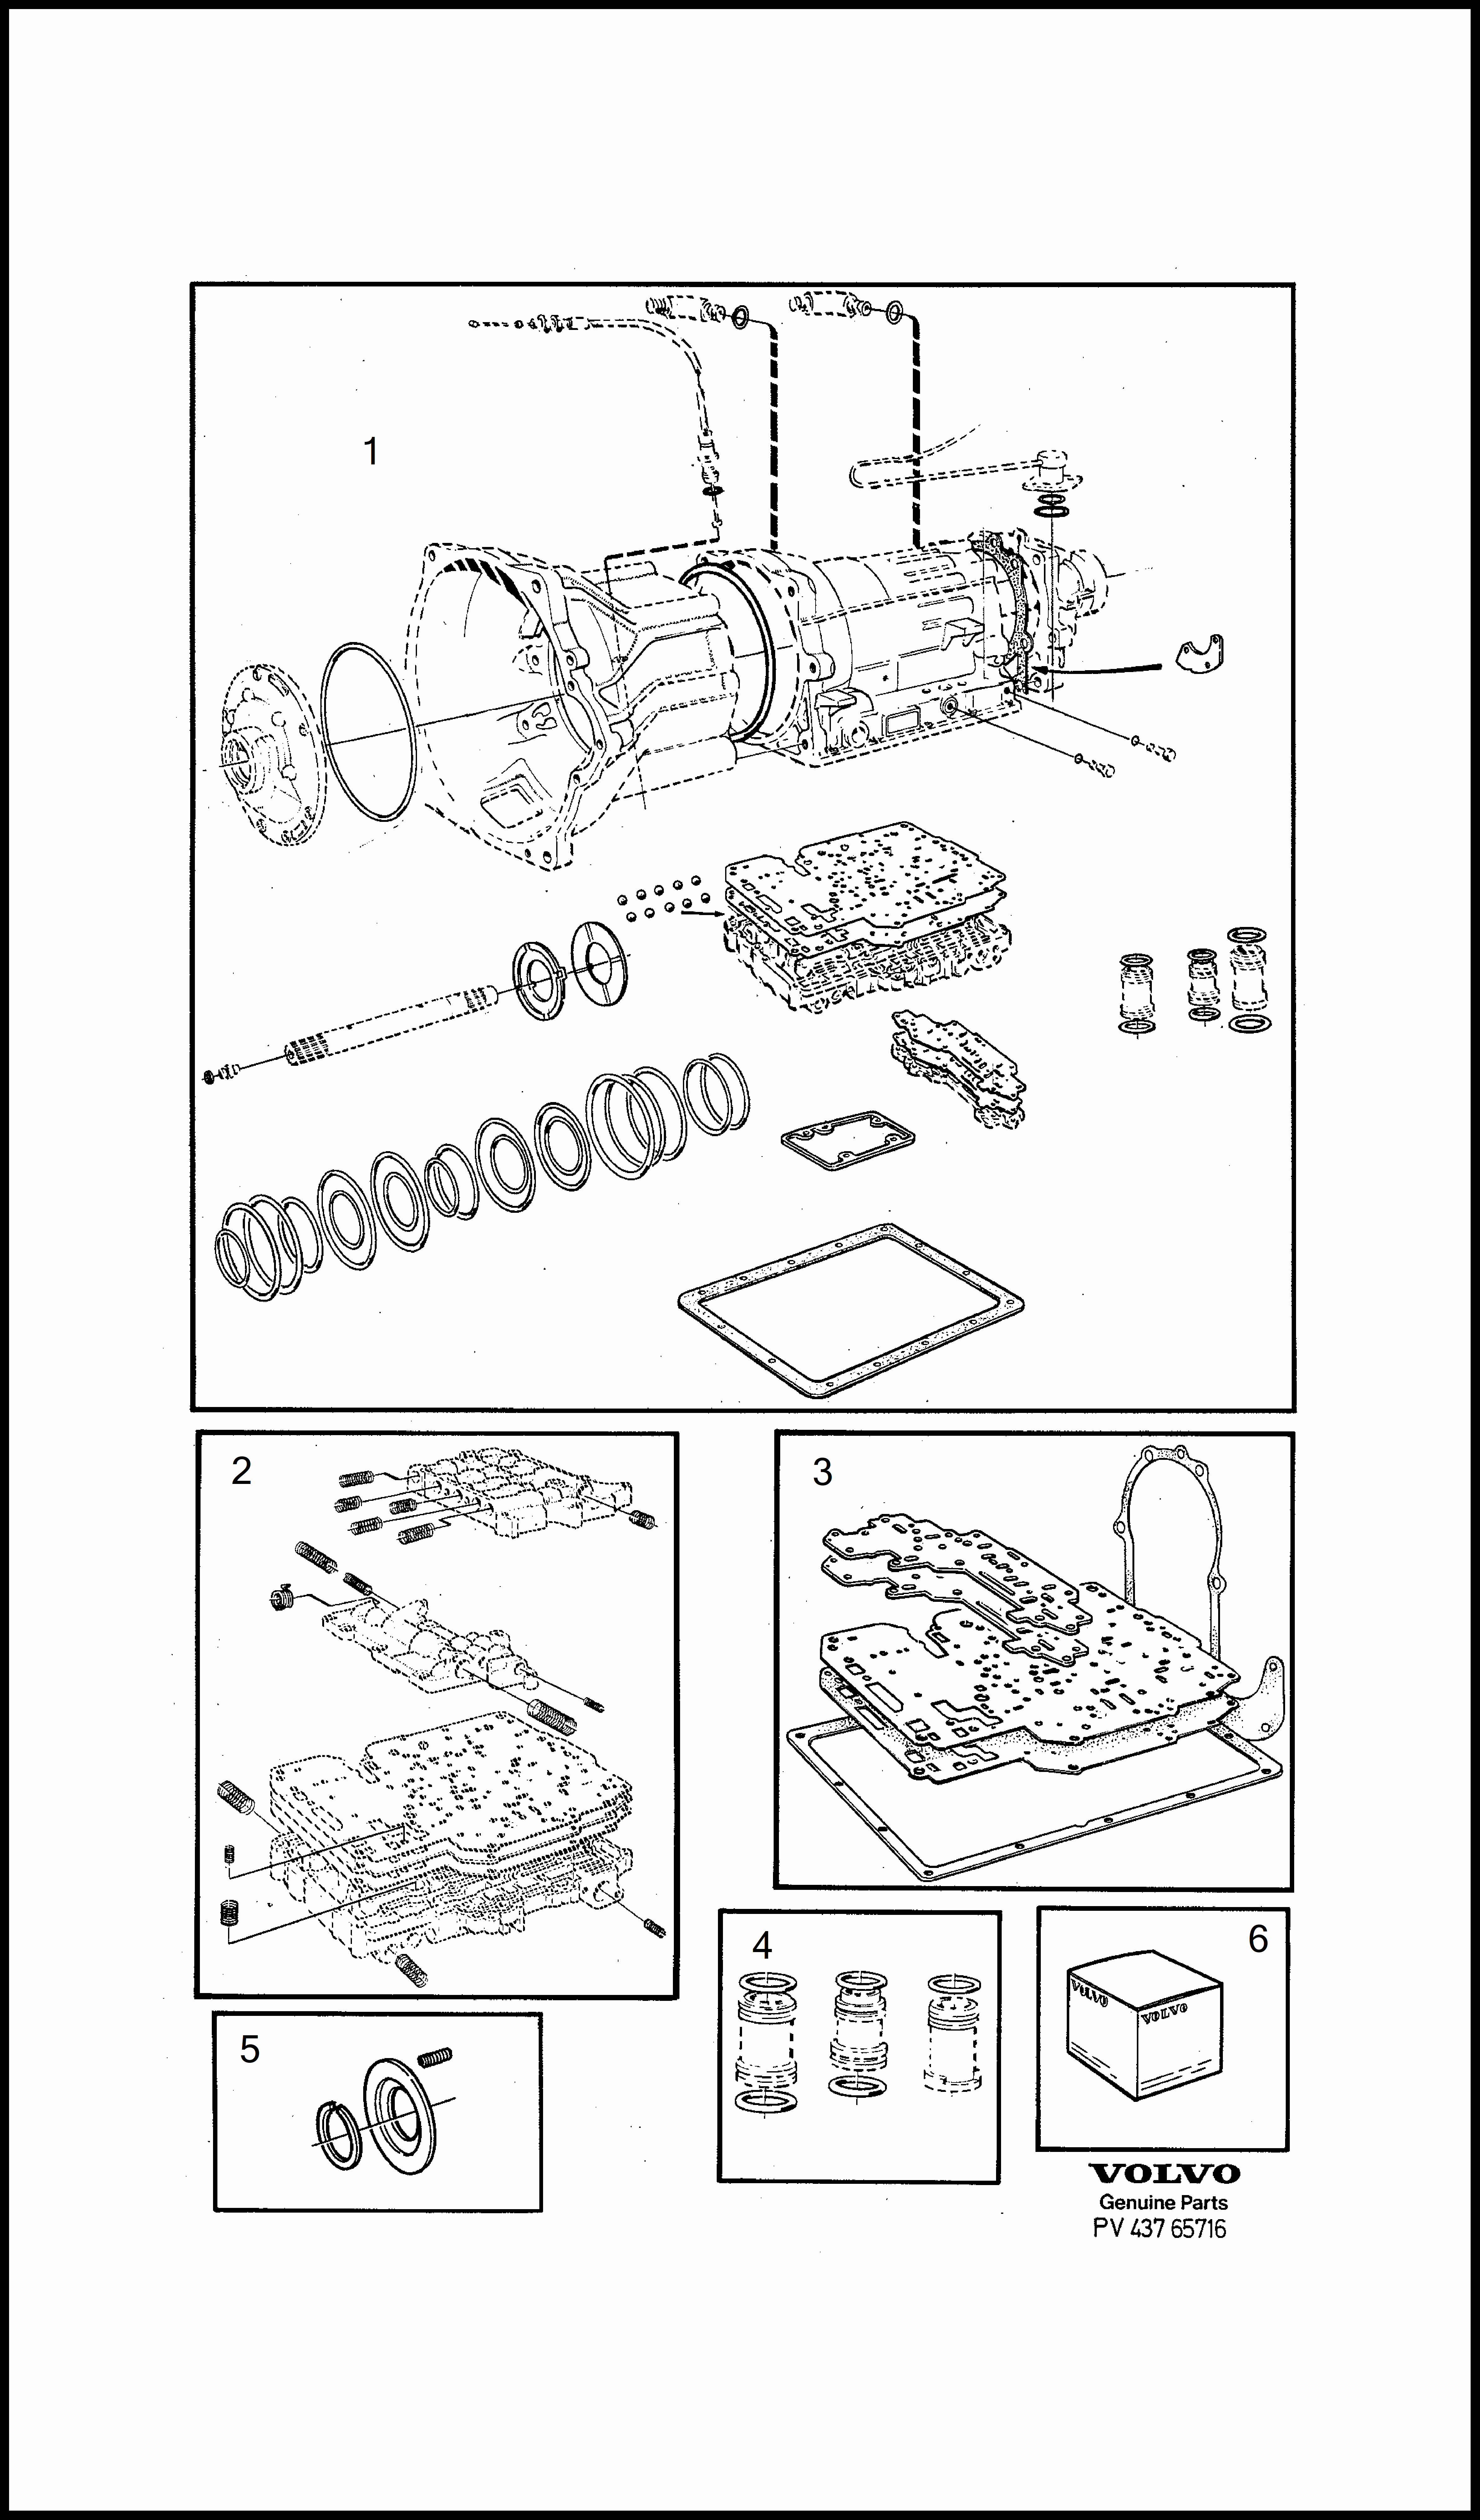 repair kits за Volvo 240 240